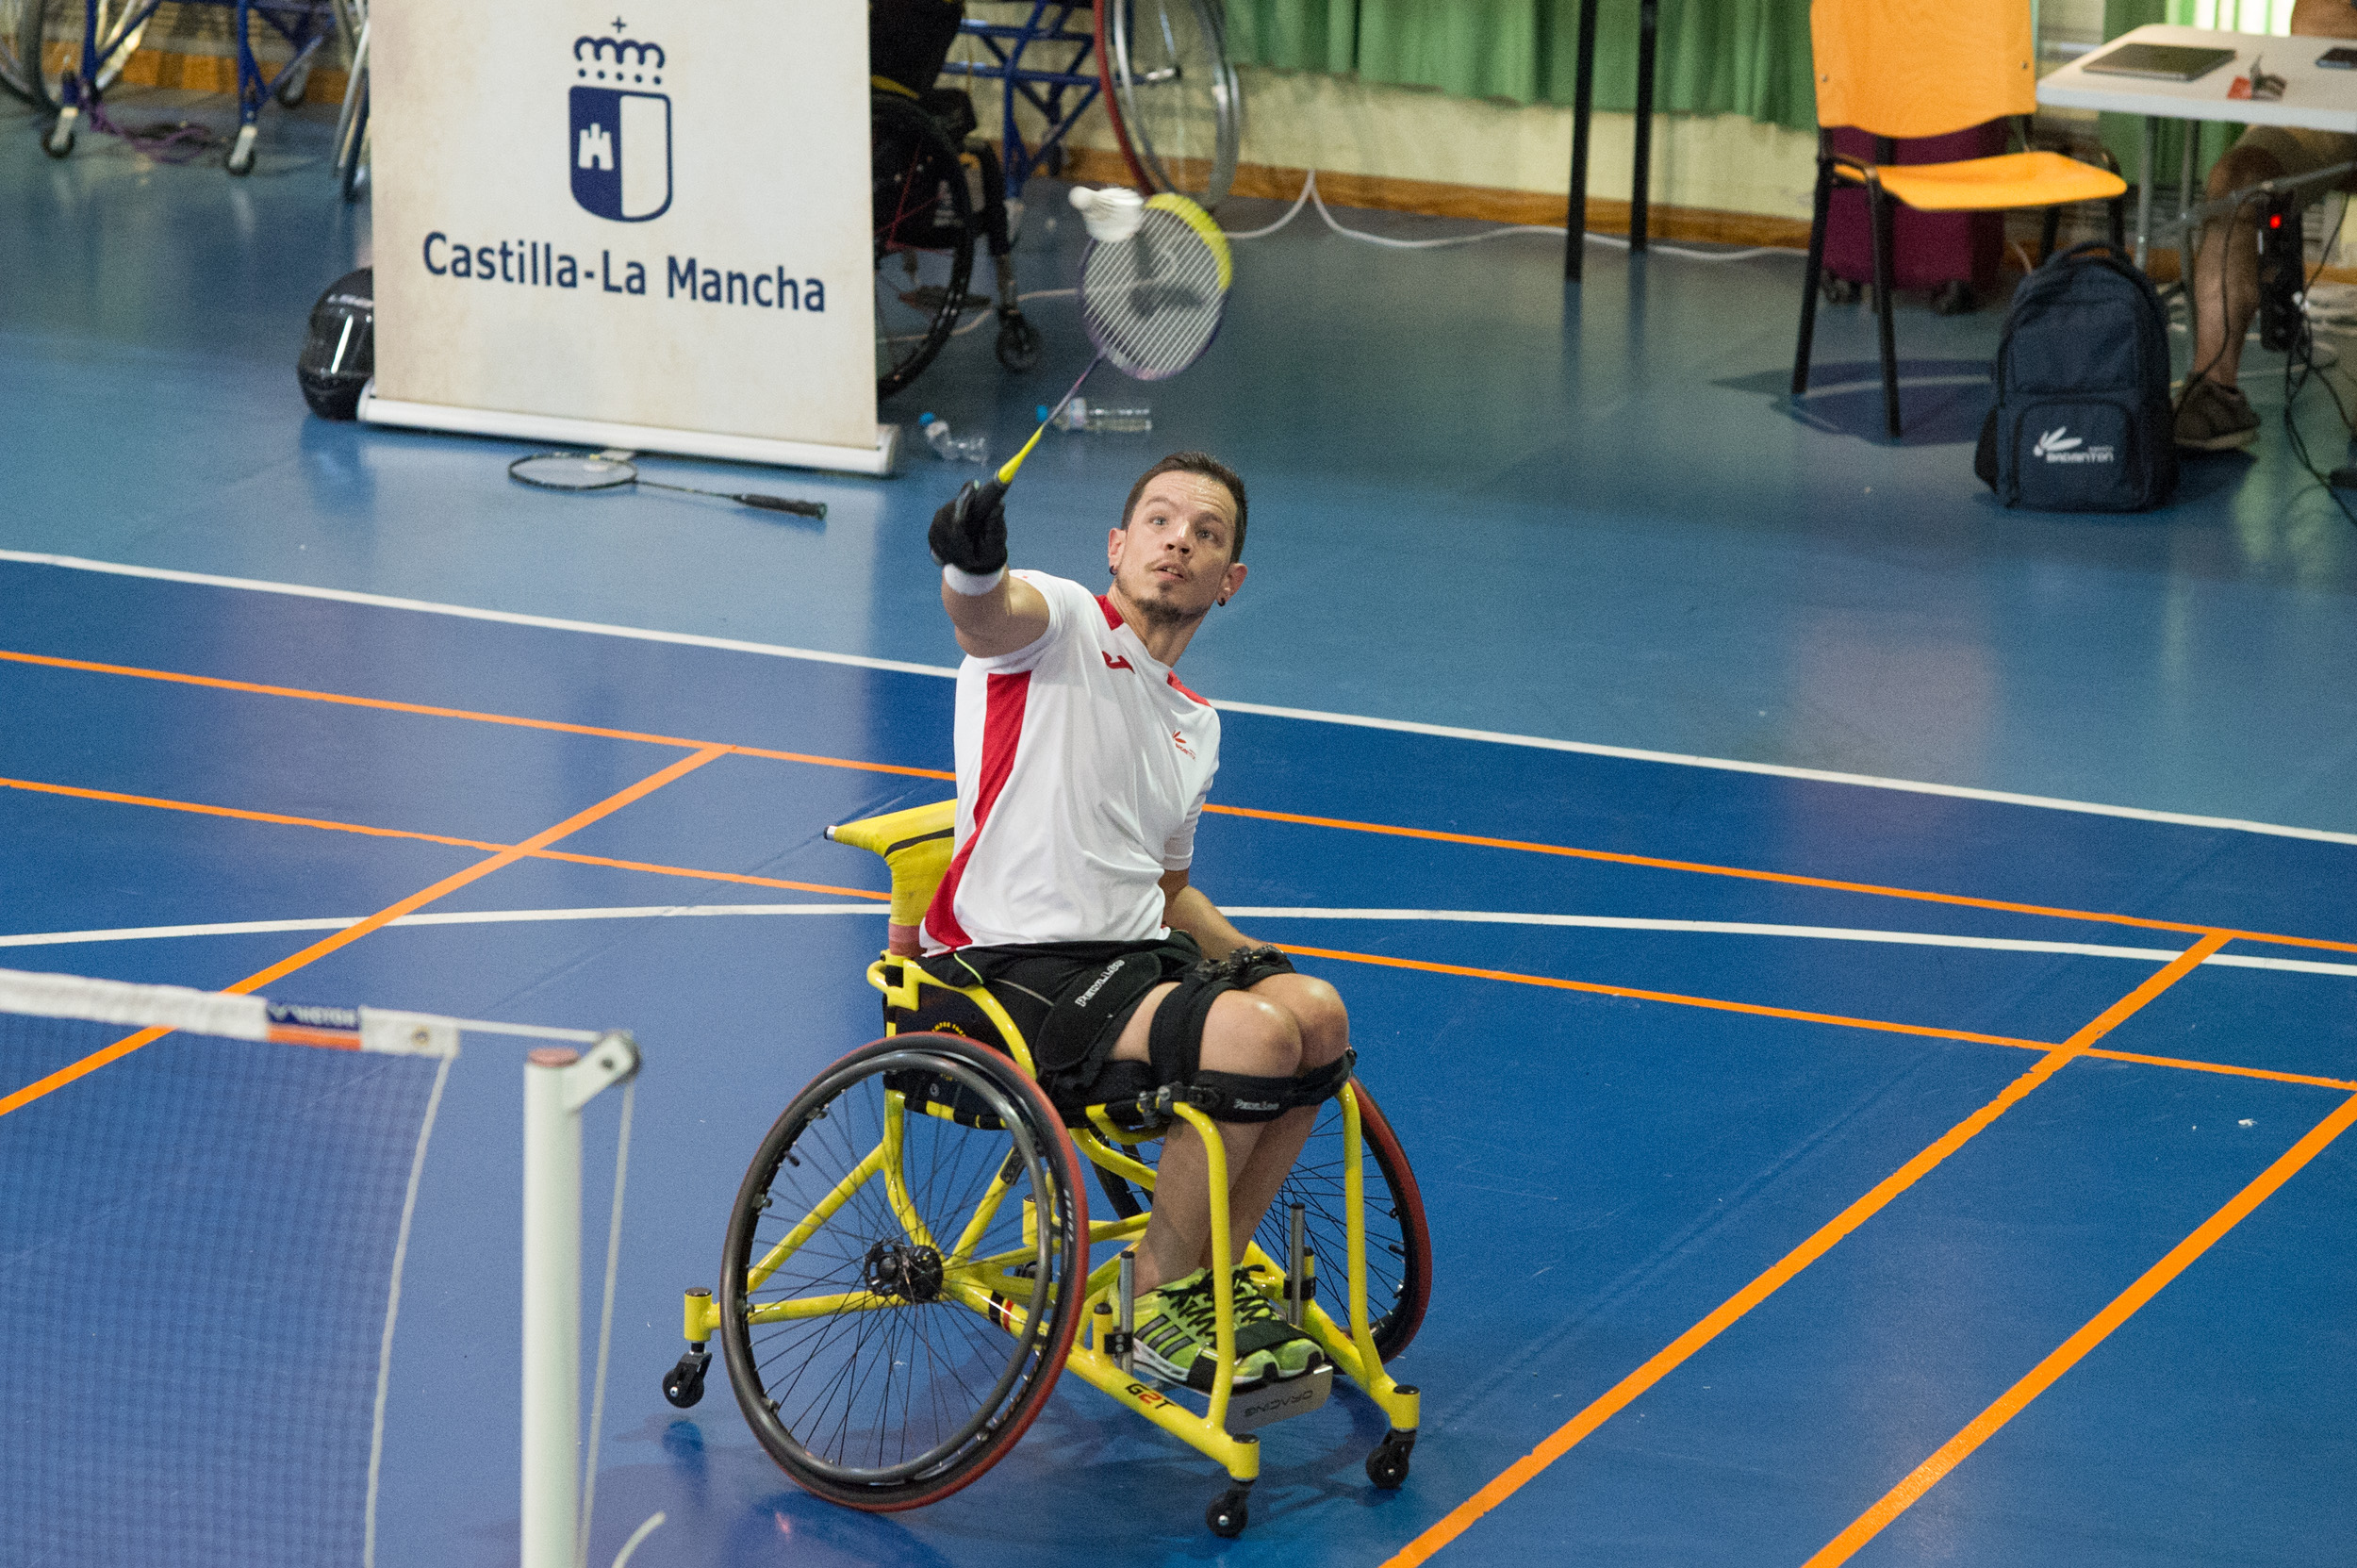 Jornadas Badminton. Foto: Carlos Monroy